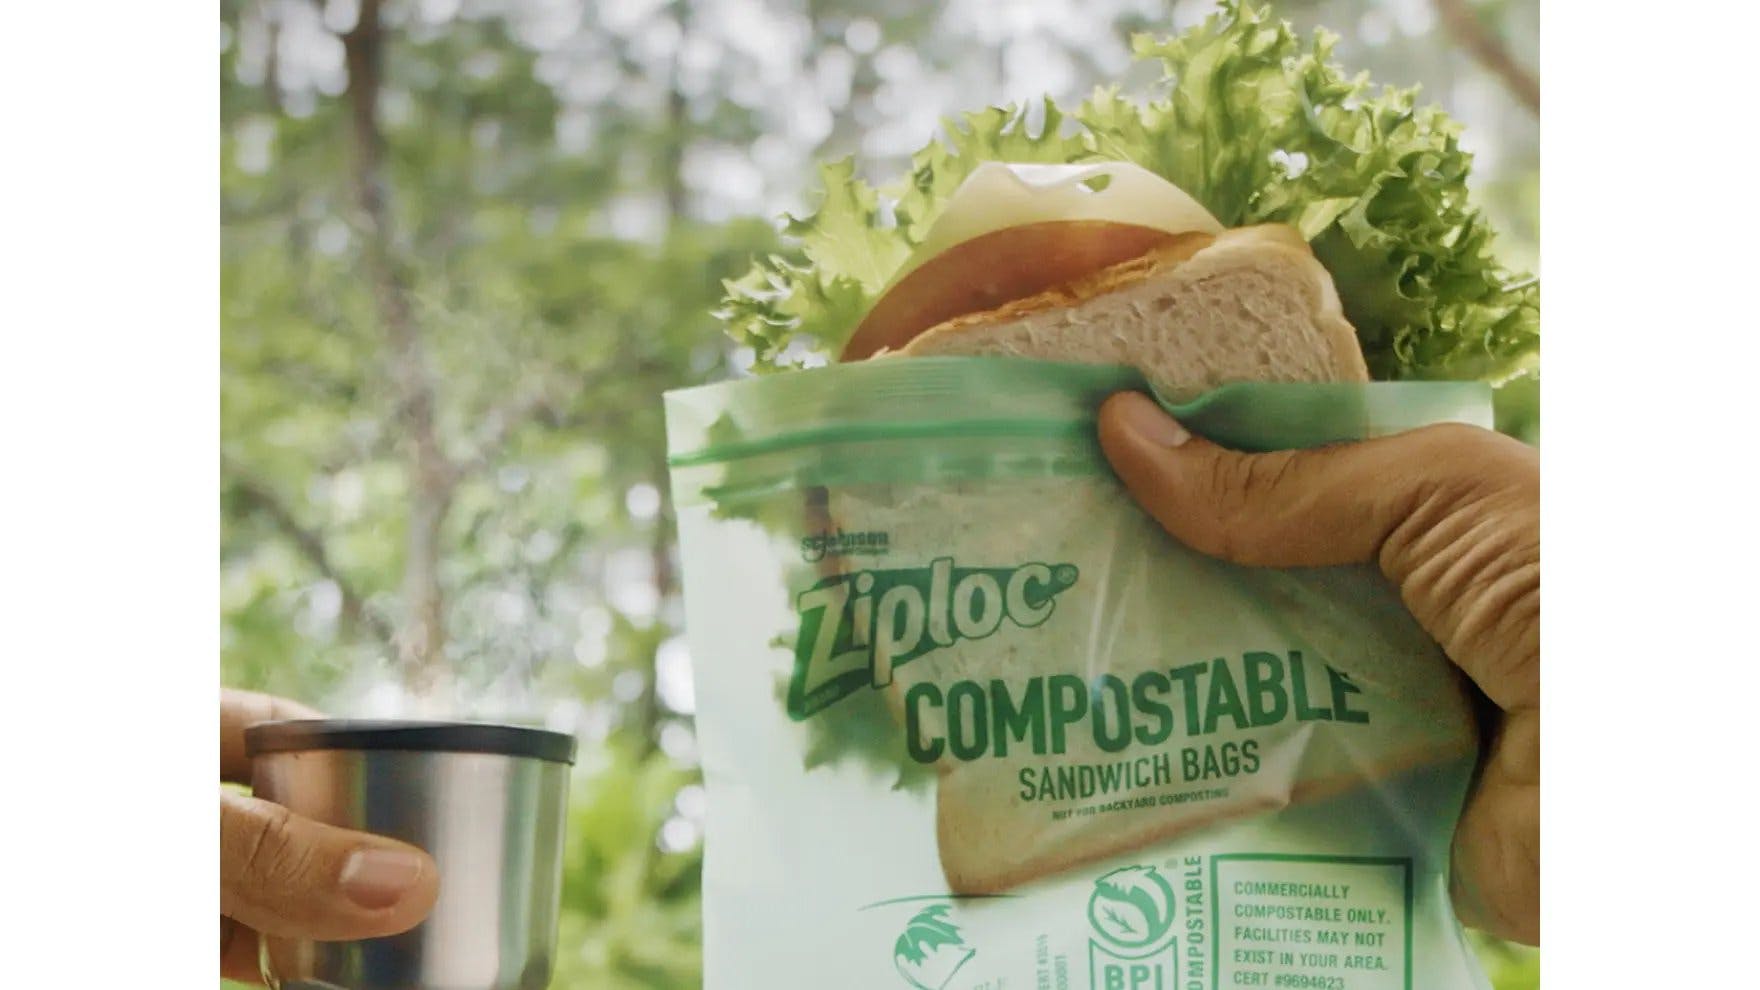 Man holding a sandwich inside a Ziploc® brand compostable sandwich